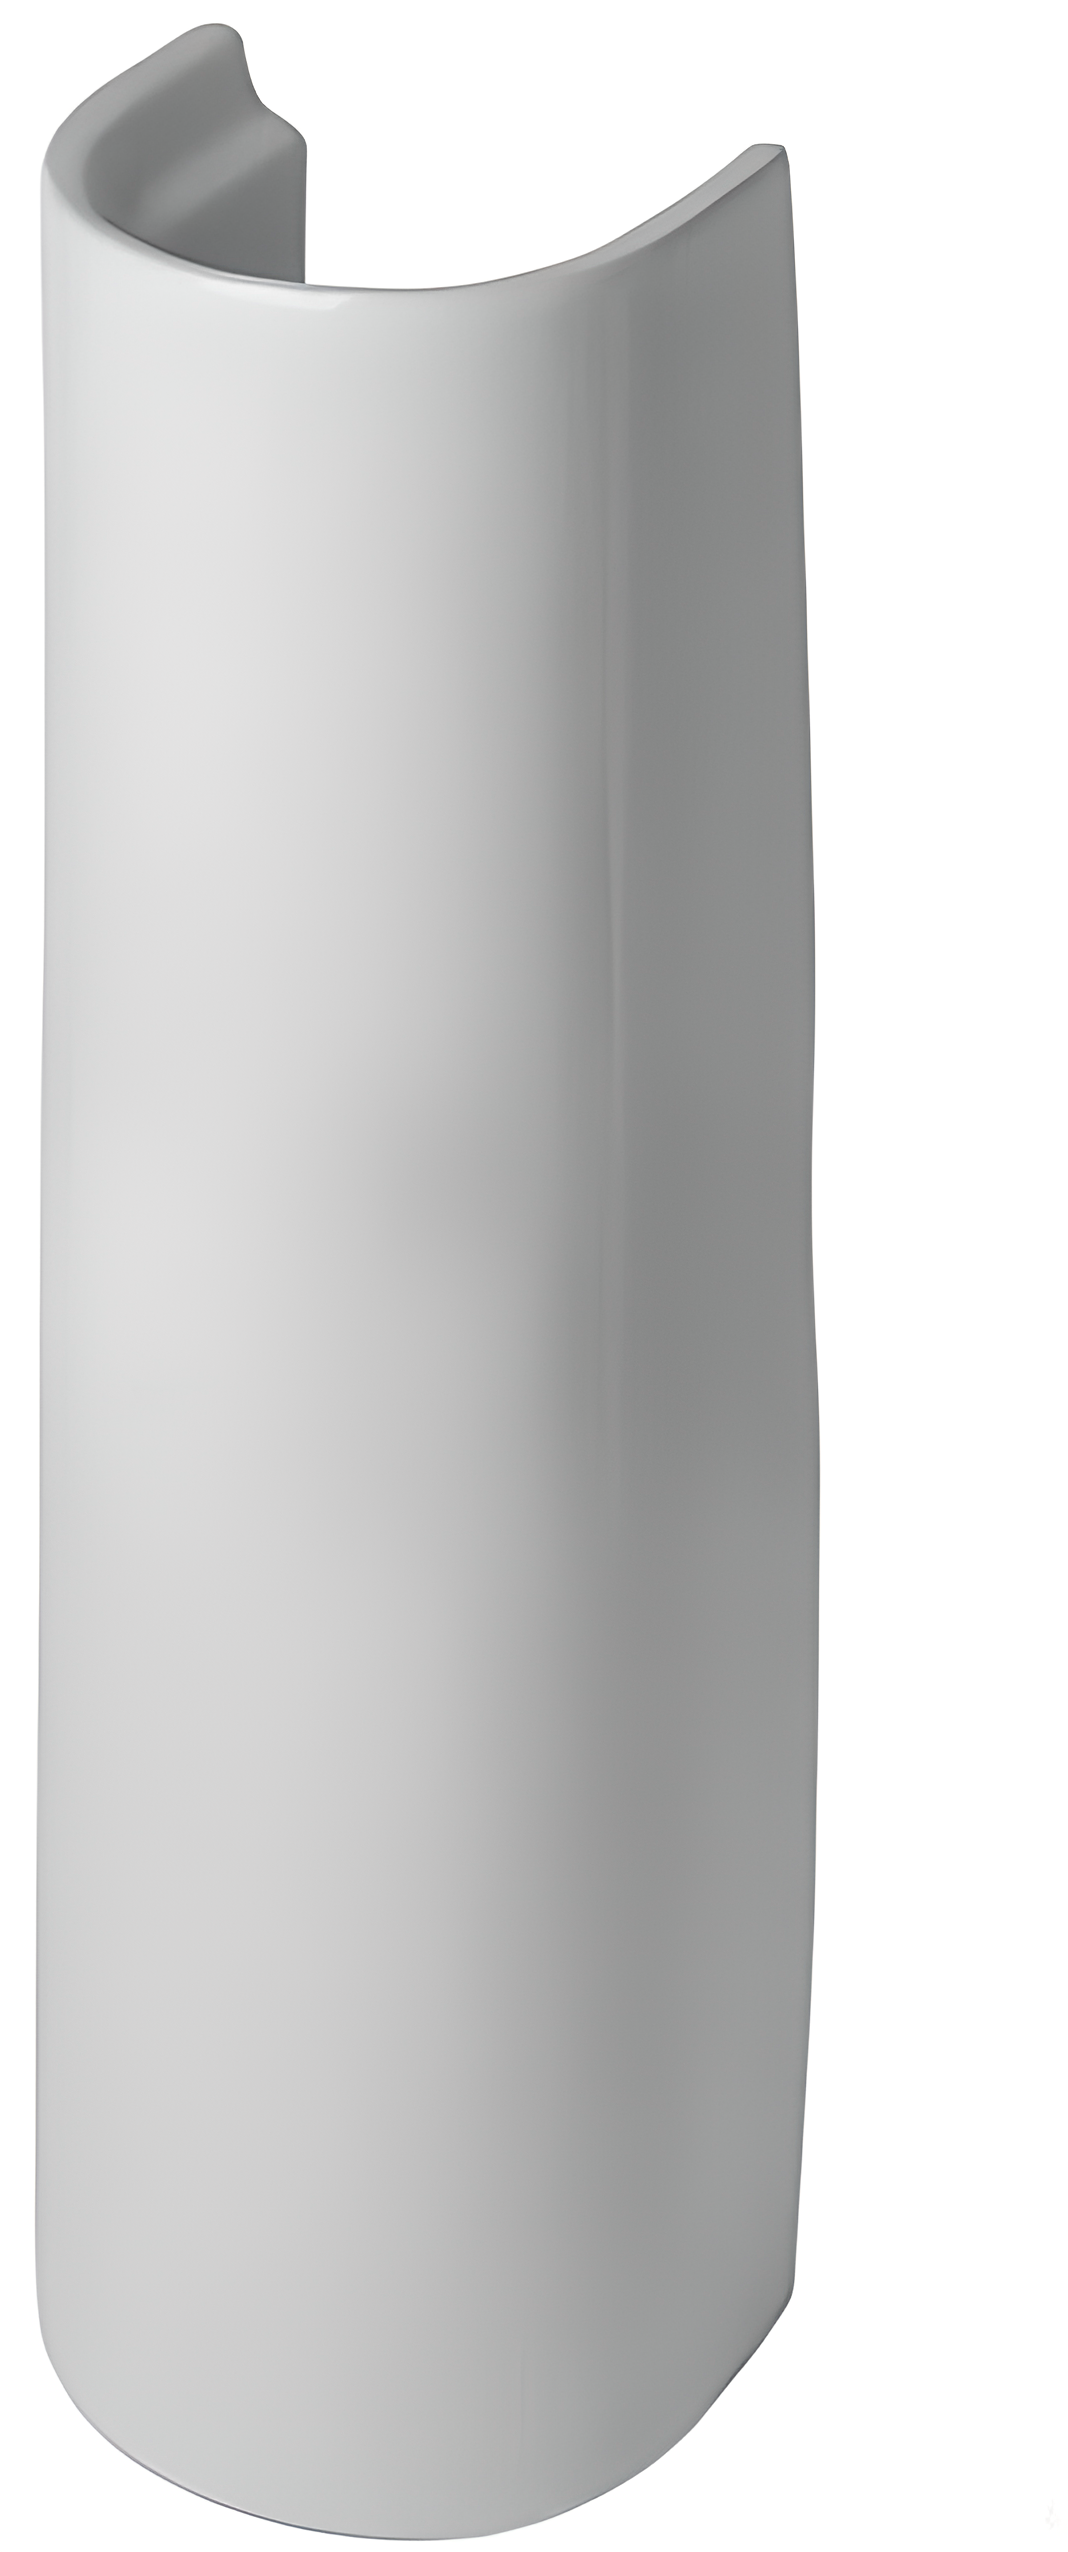 пьедестал для раковины cersanit ирида карина 18 5x69 см керамика Пьедестал для раковины Sanita Самарский белый PD.FS/Samarsky/N/WHT.G/S1